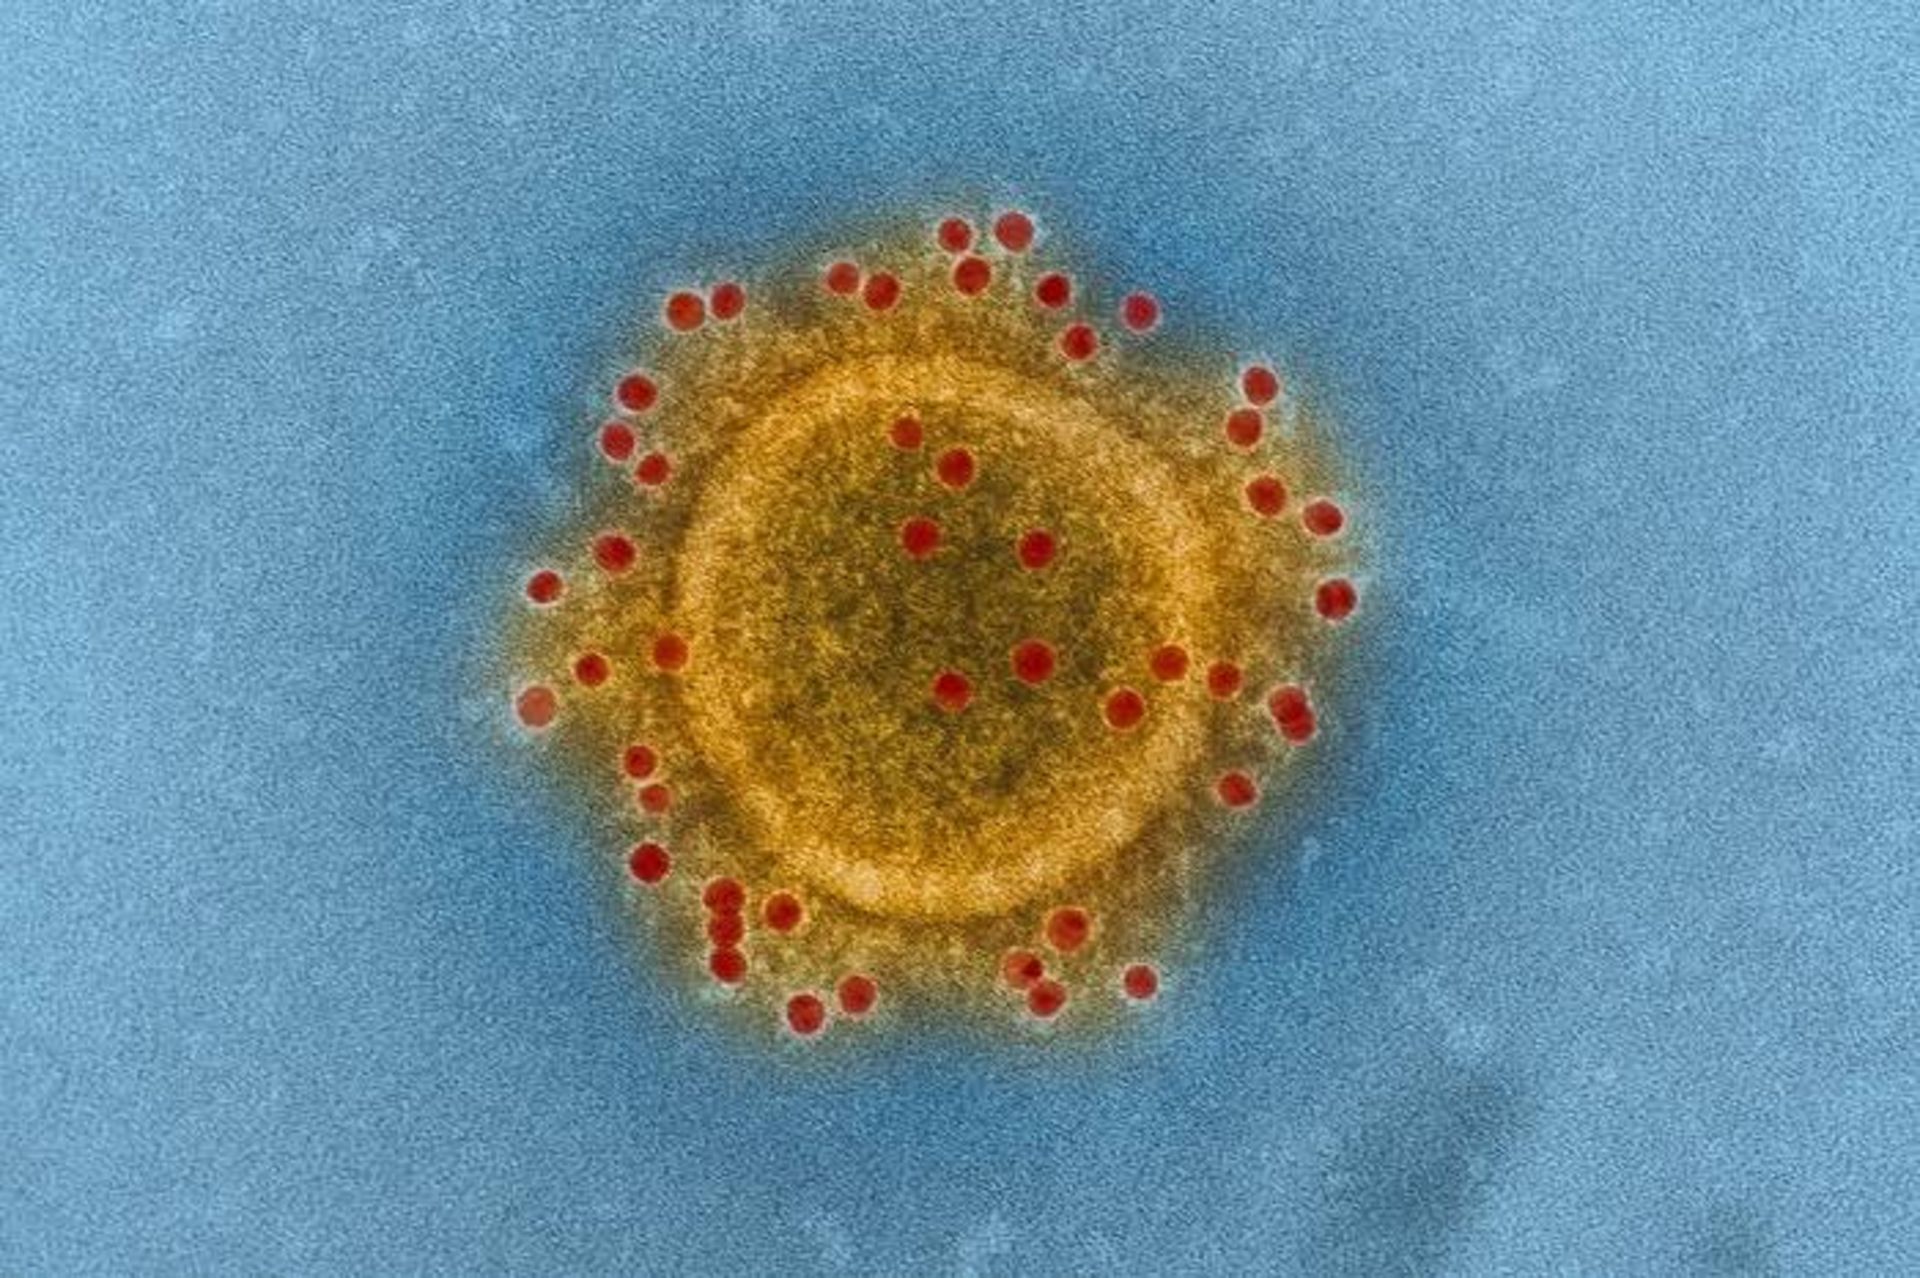 مرجع متخصصين ايران ويروس مرس / MERS virus